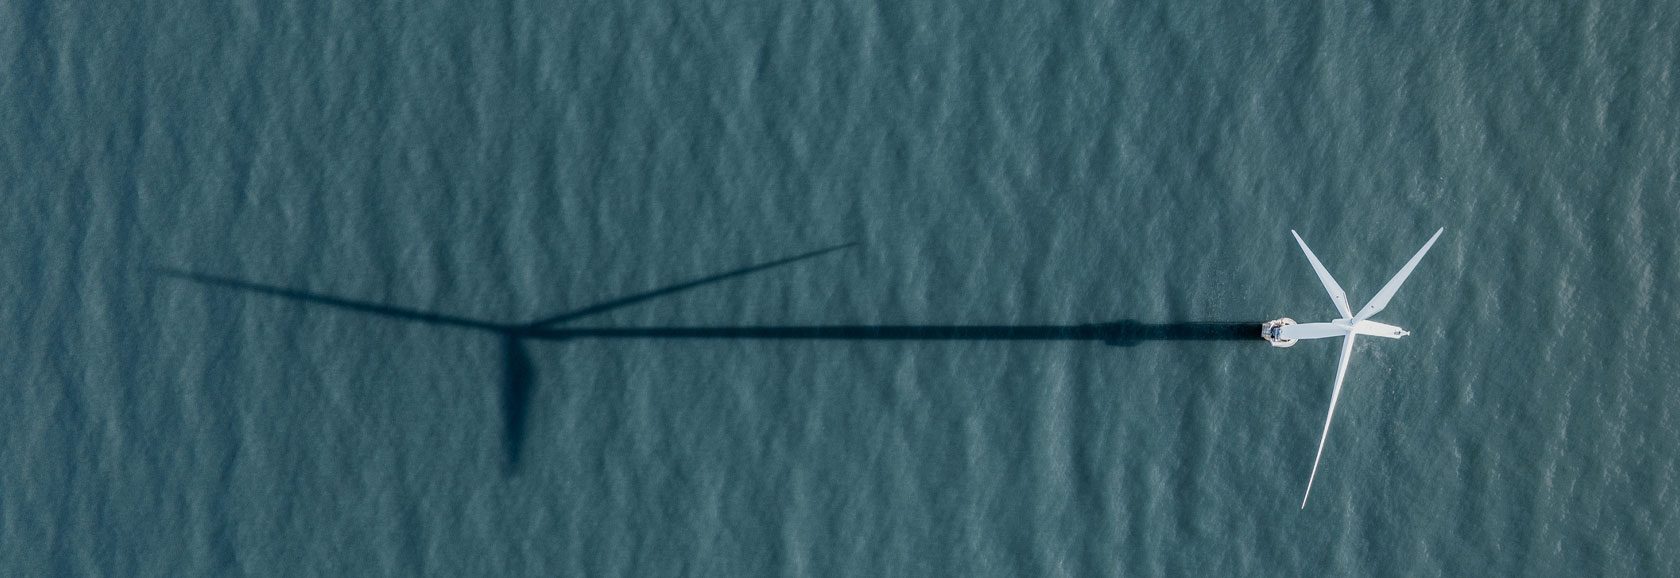 A windfarm at sea